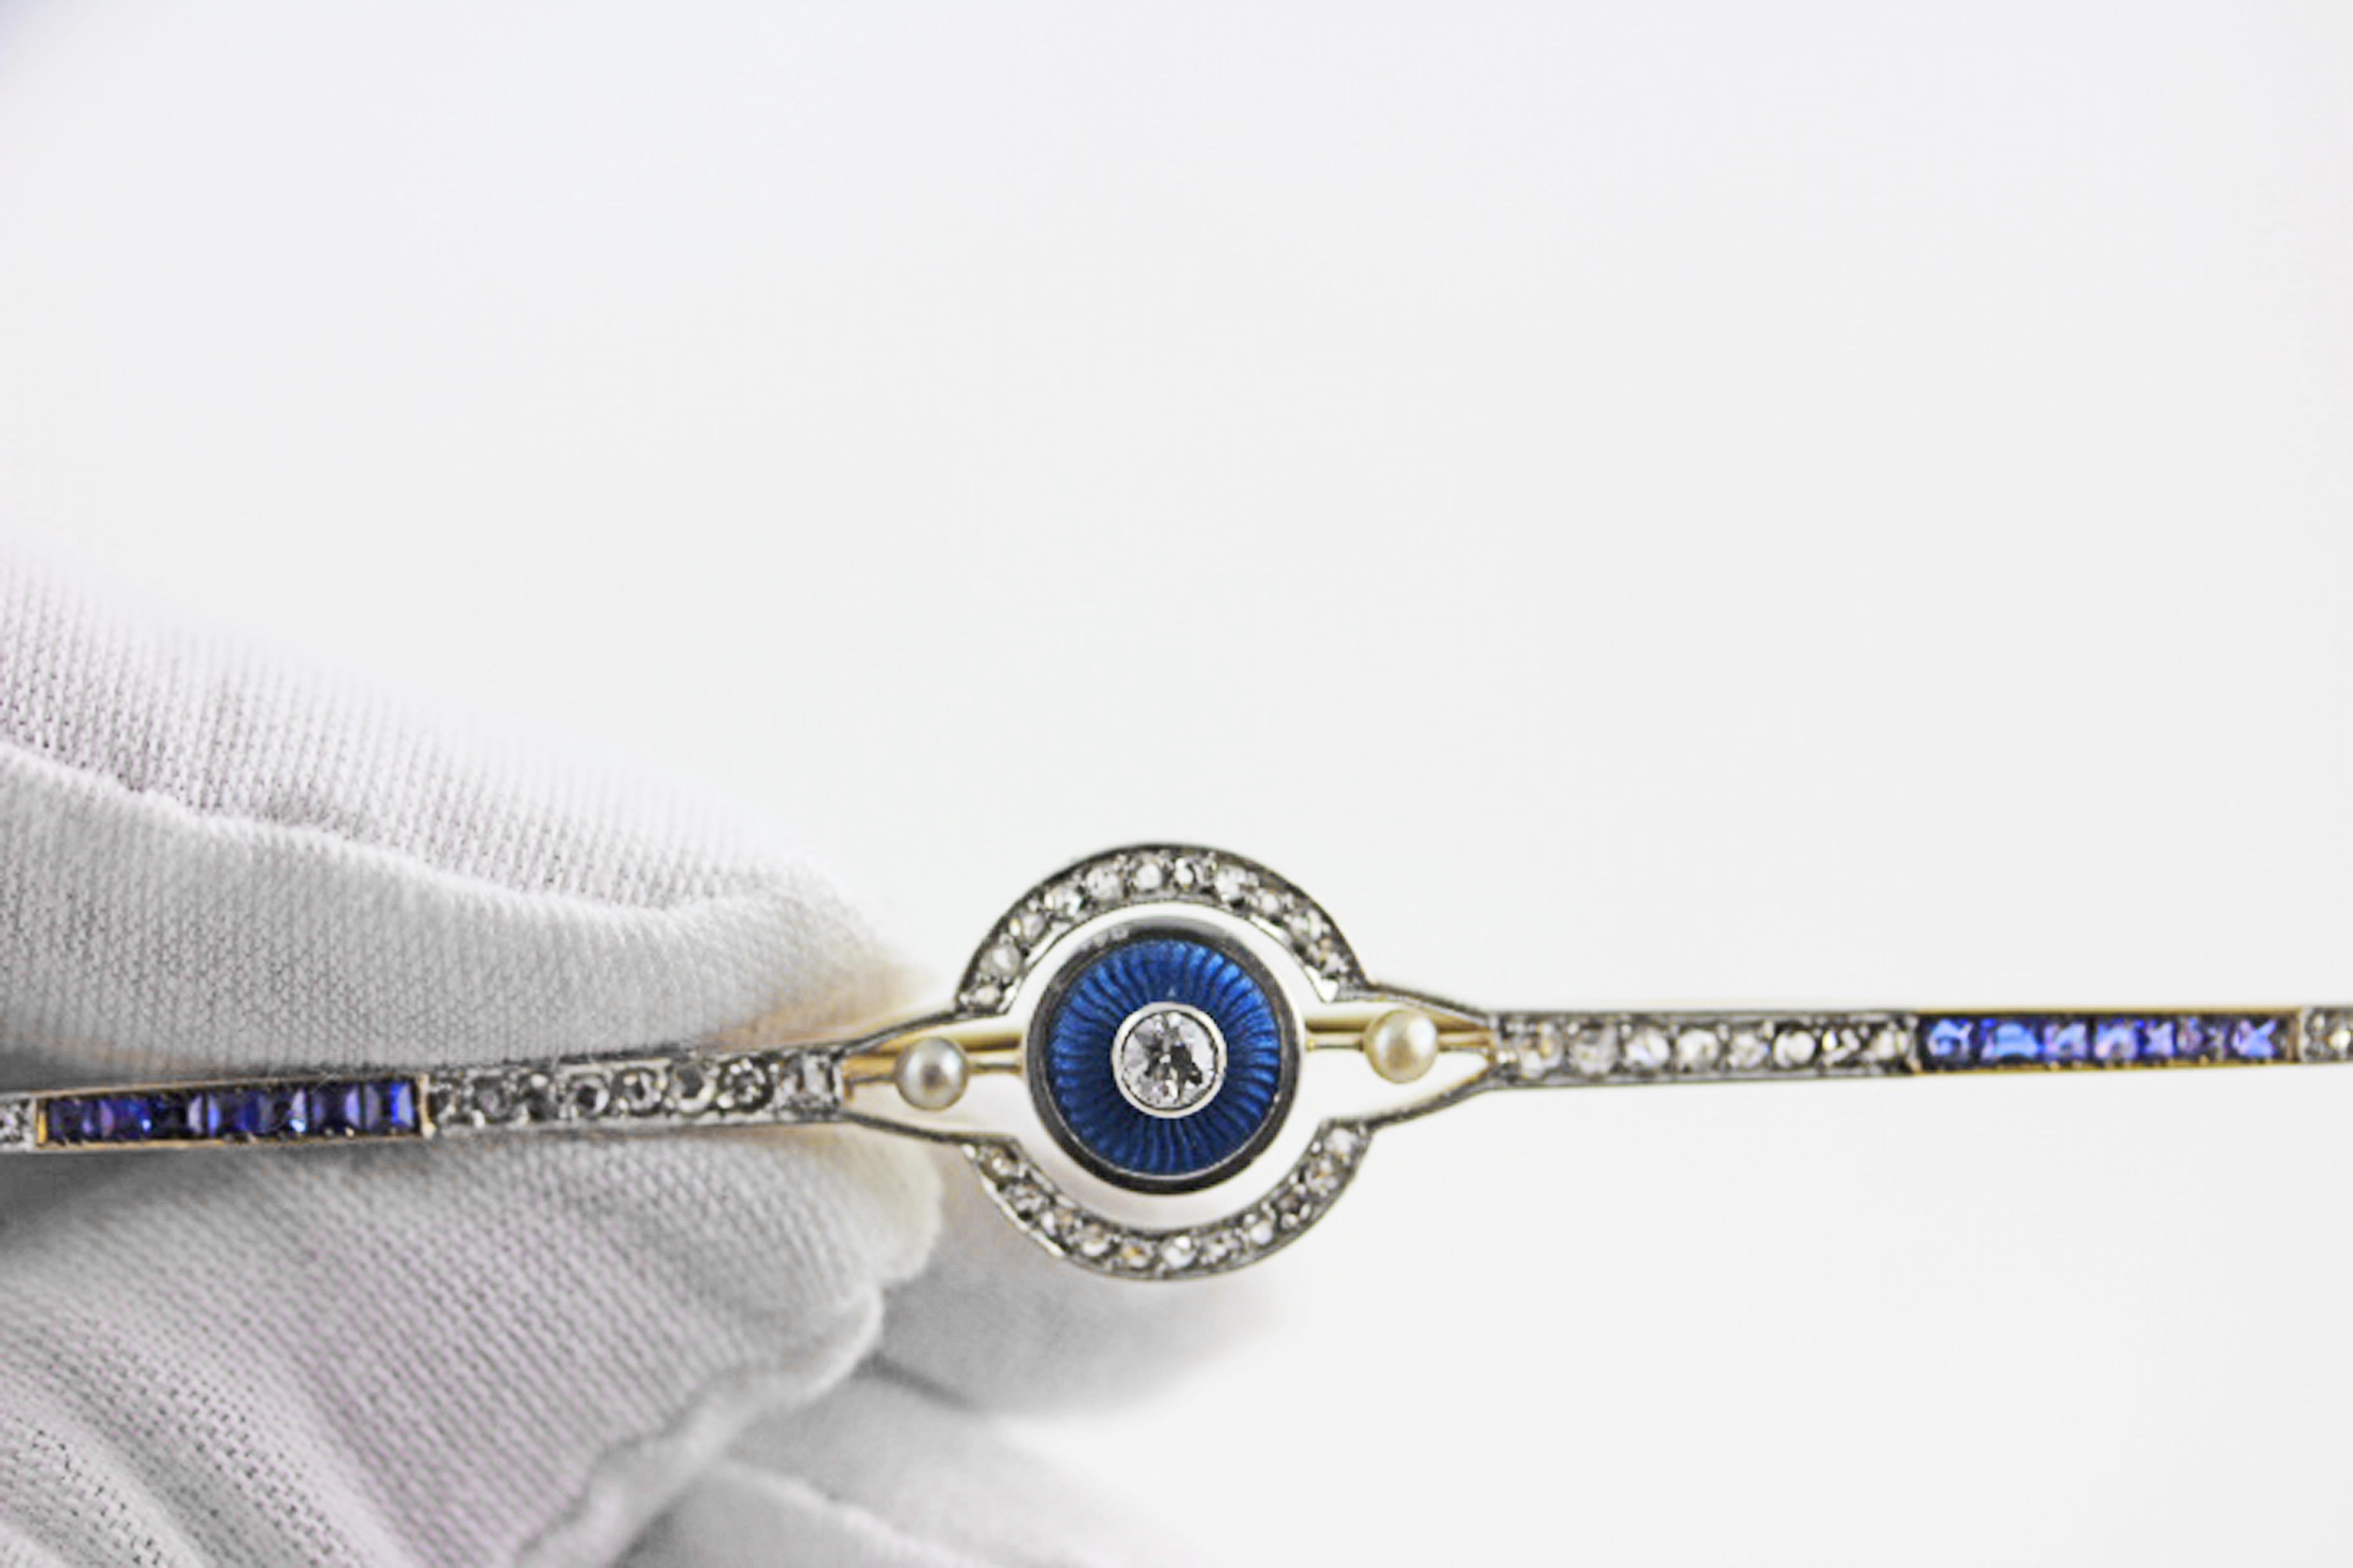 Diese atemberaubende und ganz besondere originelle Art-Déco-Bar-Anstecknadel ist aus 14-karätigem Gelbgold gefertigt. Das elegante geometrische Design besteht aus funkelnden Diamanten, die mit leuchtend blauen Saphiren durchsetzt und mit Perlen